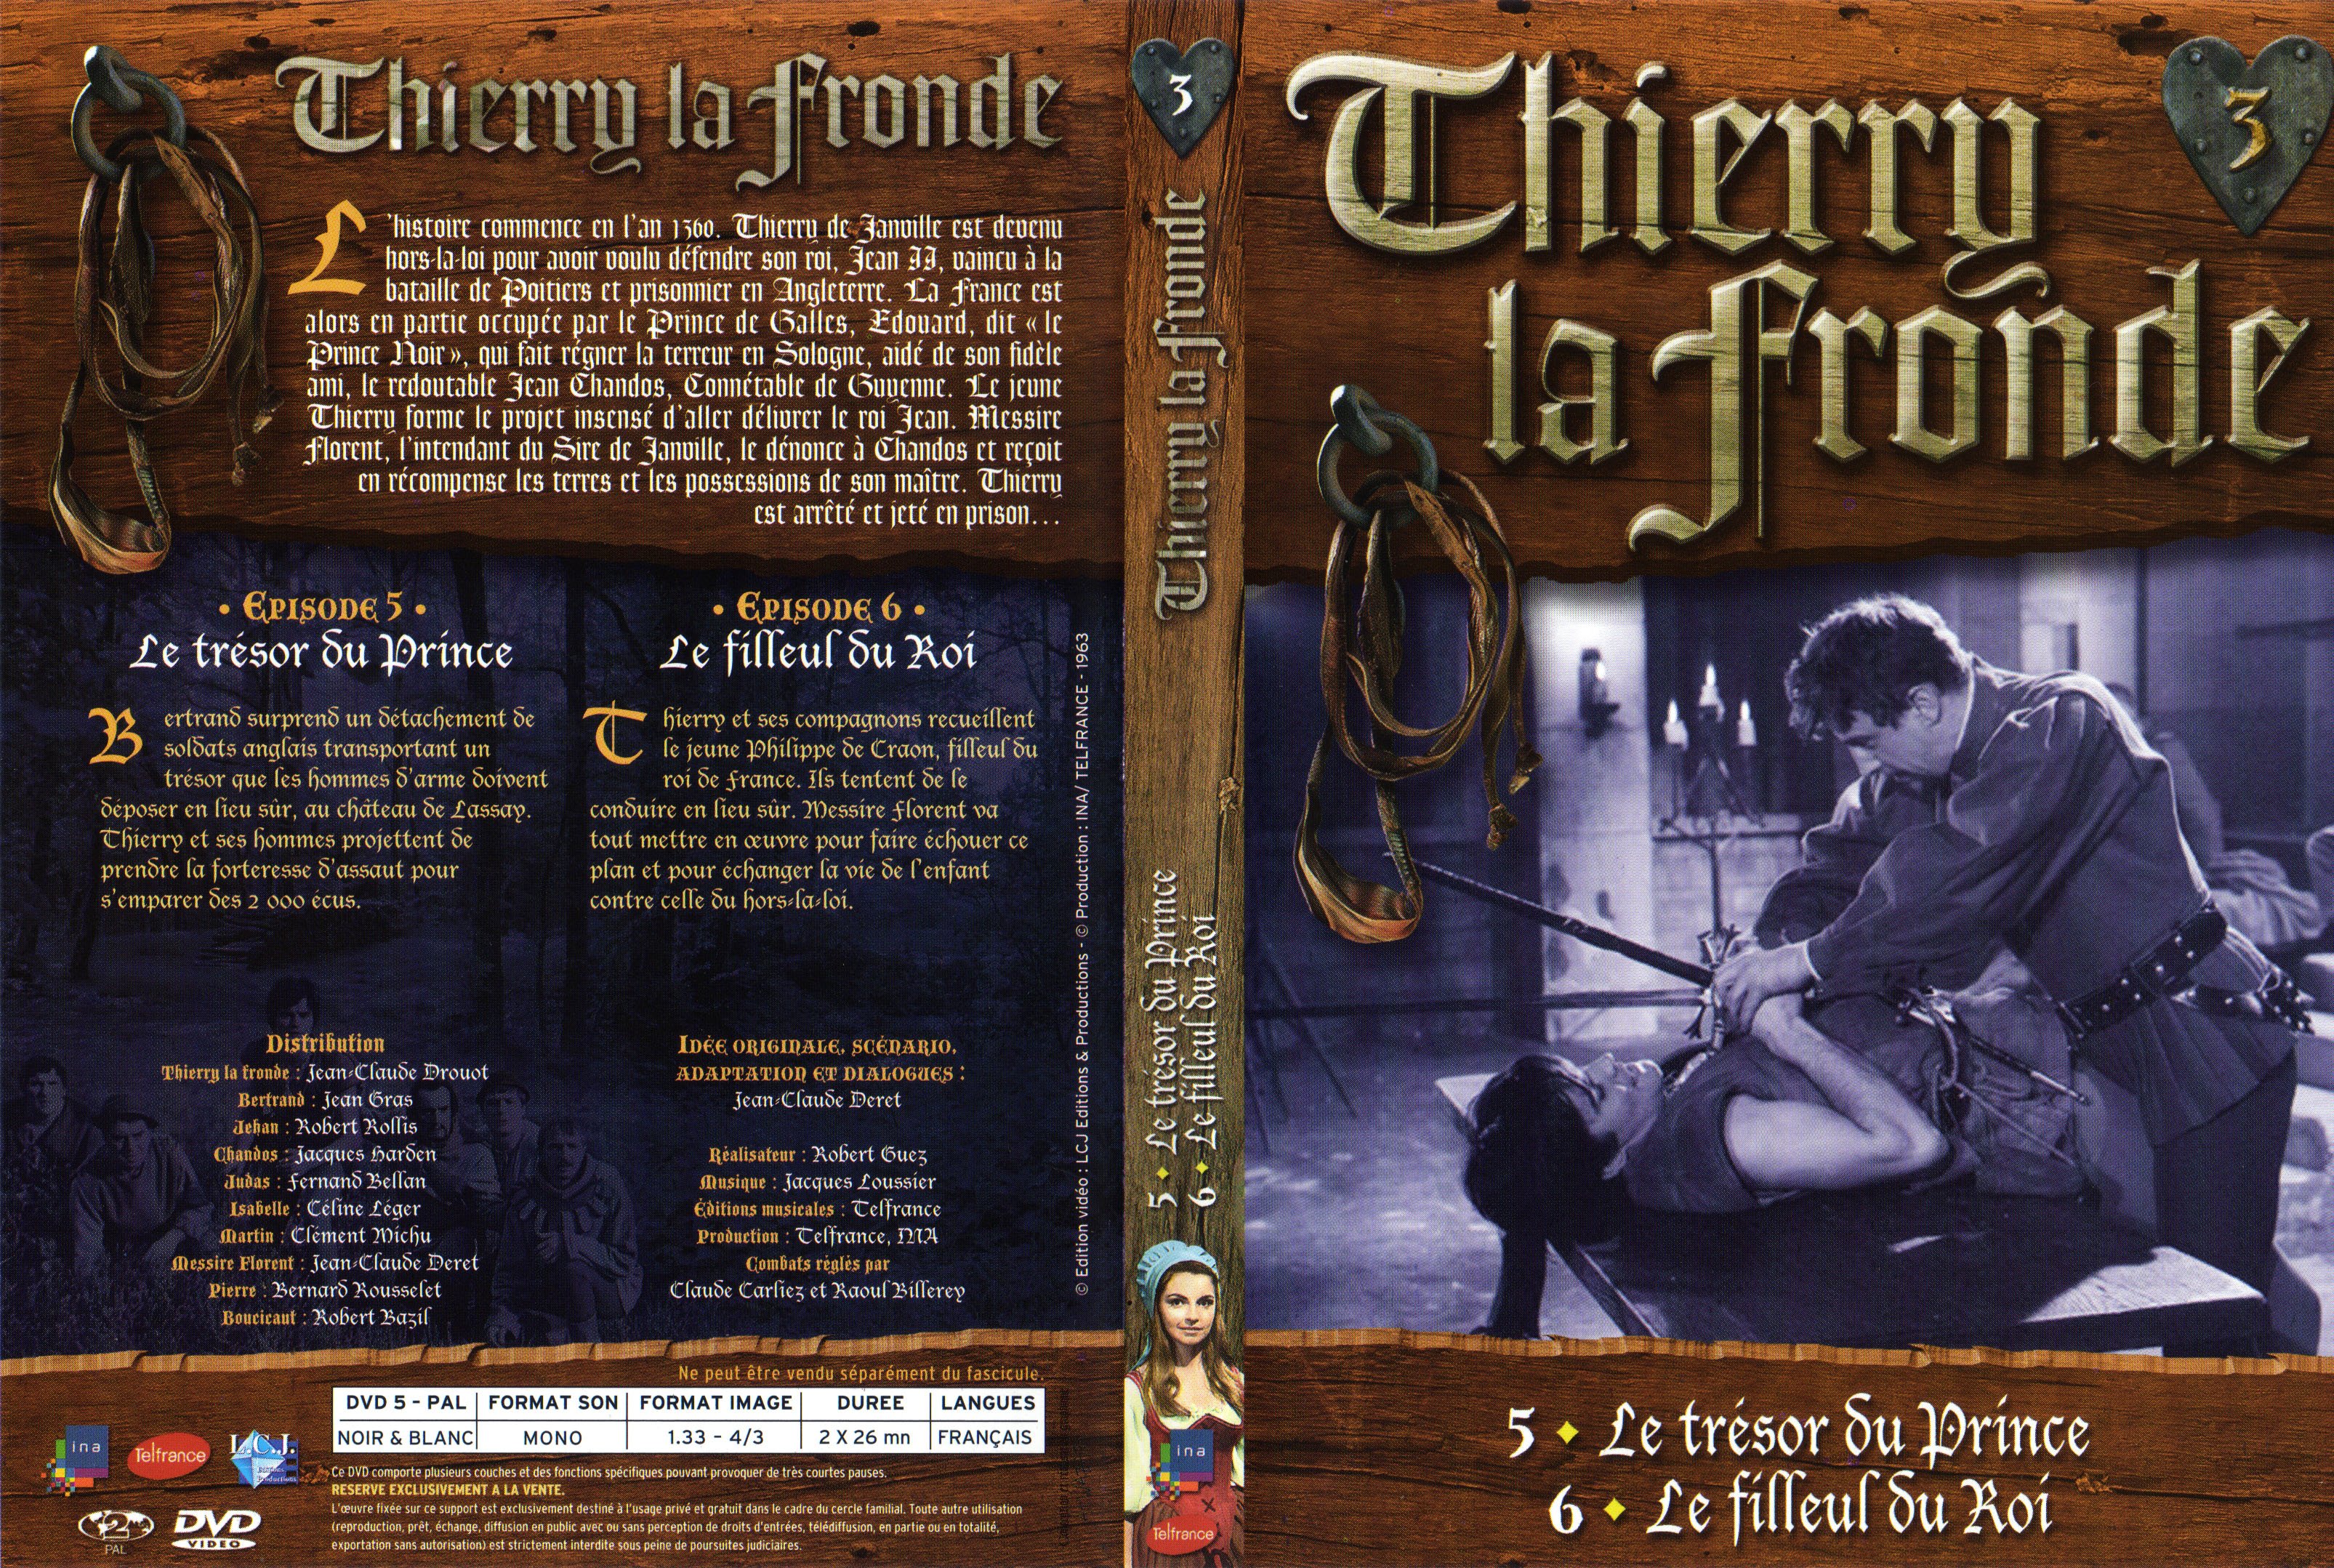 Jaquette DVD Thierry la Fronde vol 03